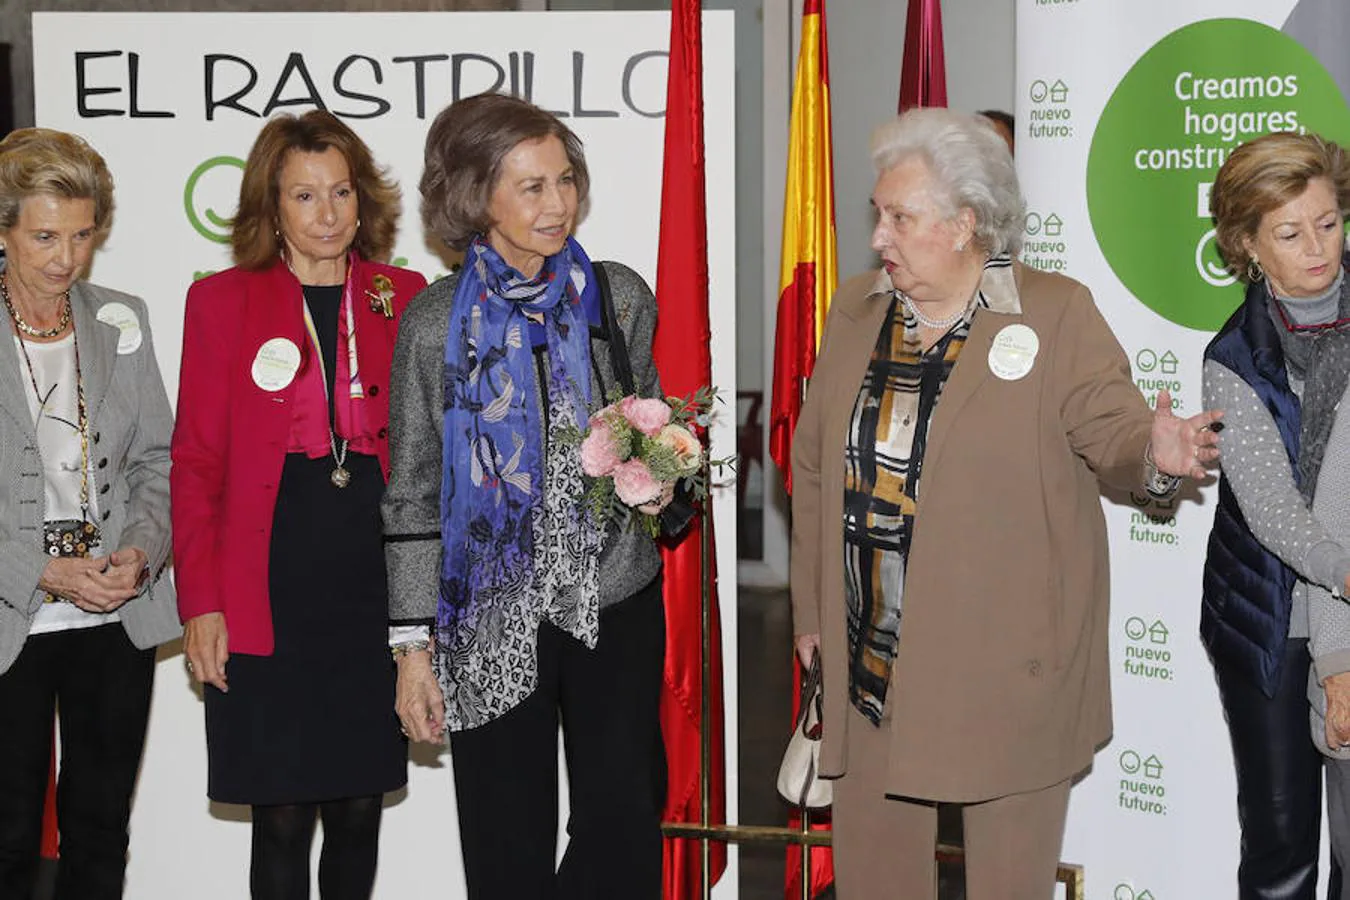 La Reina fue recibida a su llegada por su cuñada, la Infanta Doña Pilar, presidenta de honor de Nuevo Futuro, y por Pina Sánchez Errázuriz, presidenta nacional de la asociación.